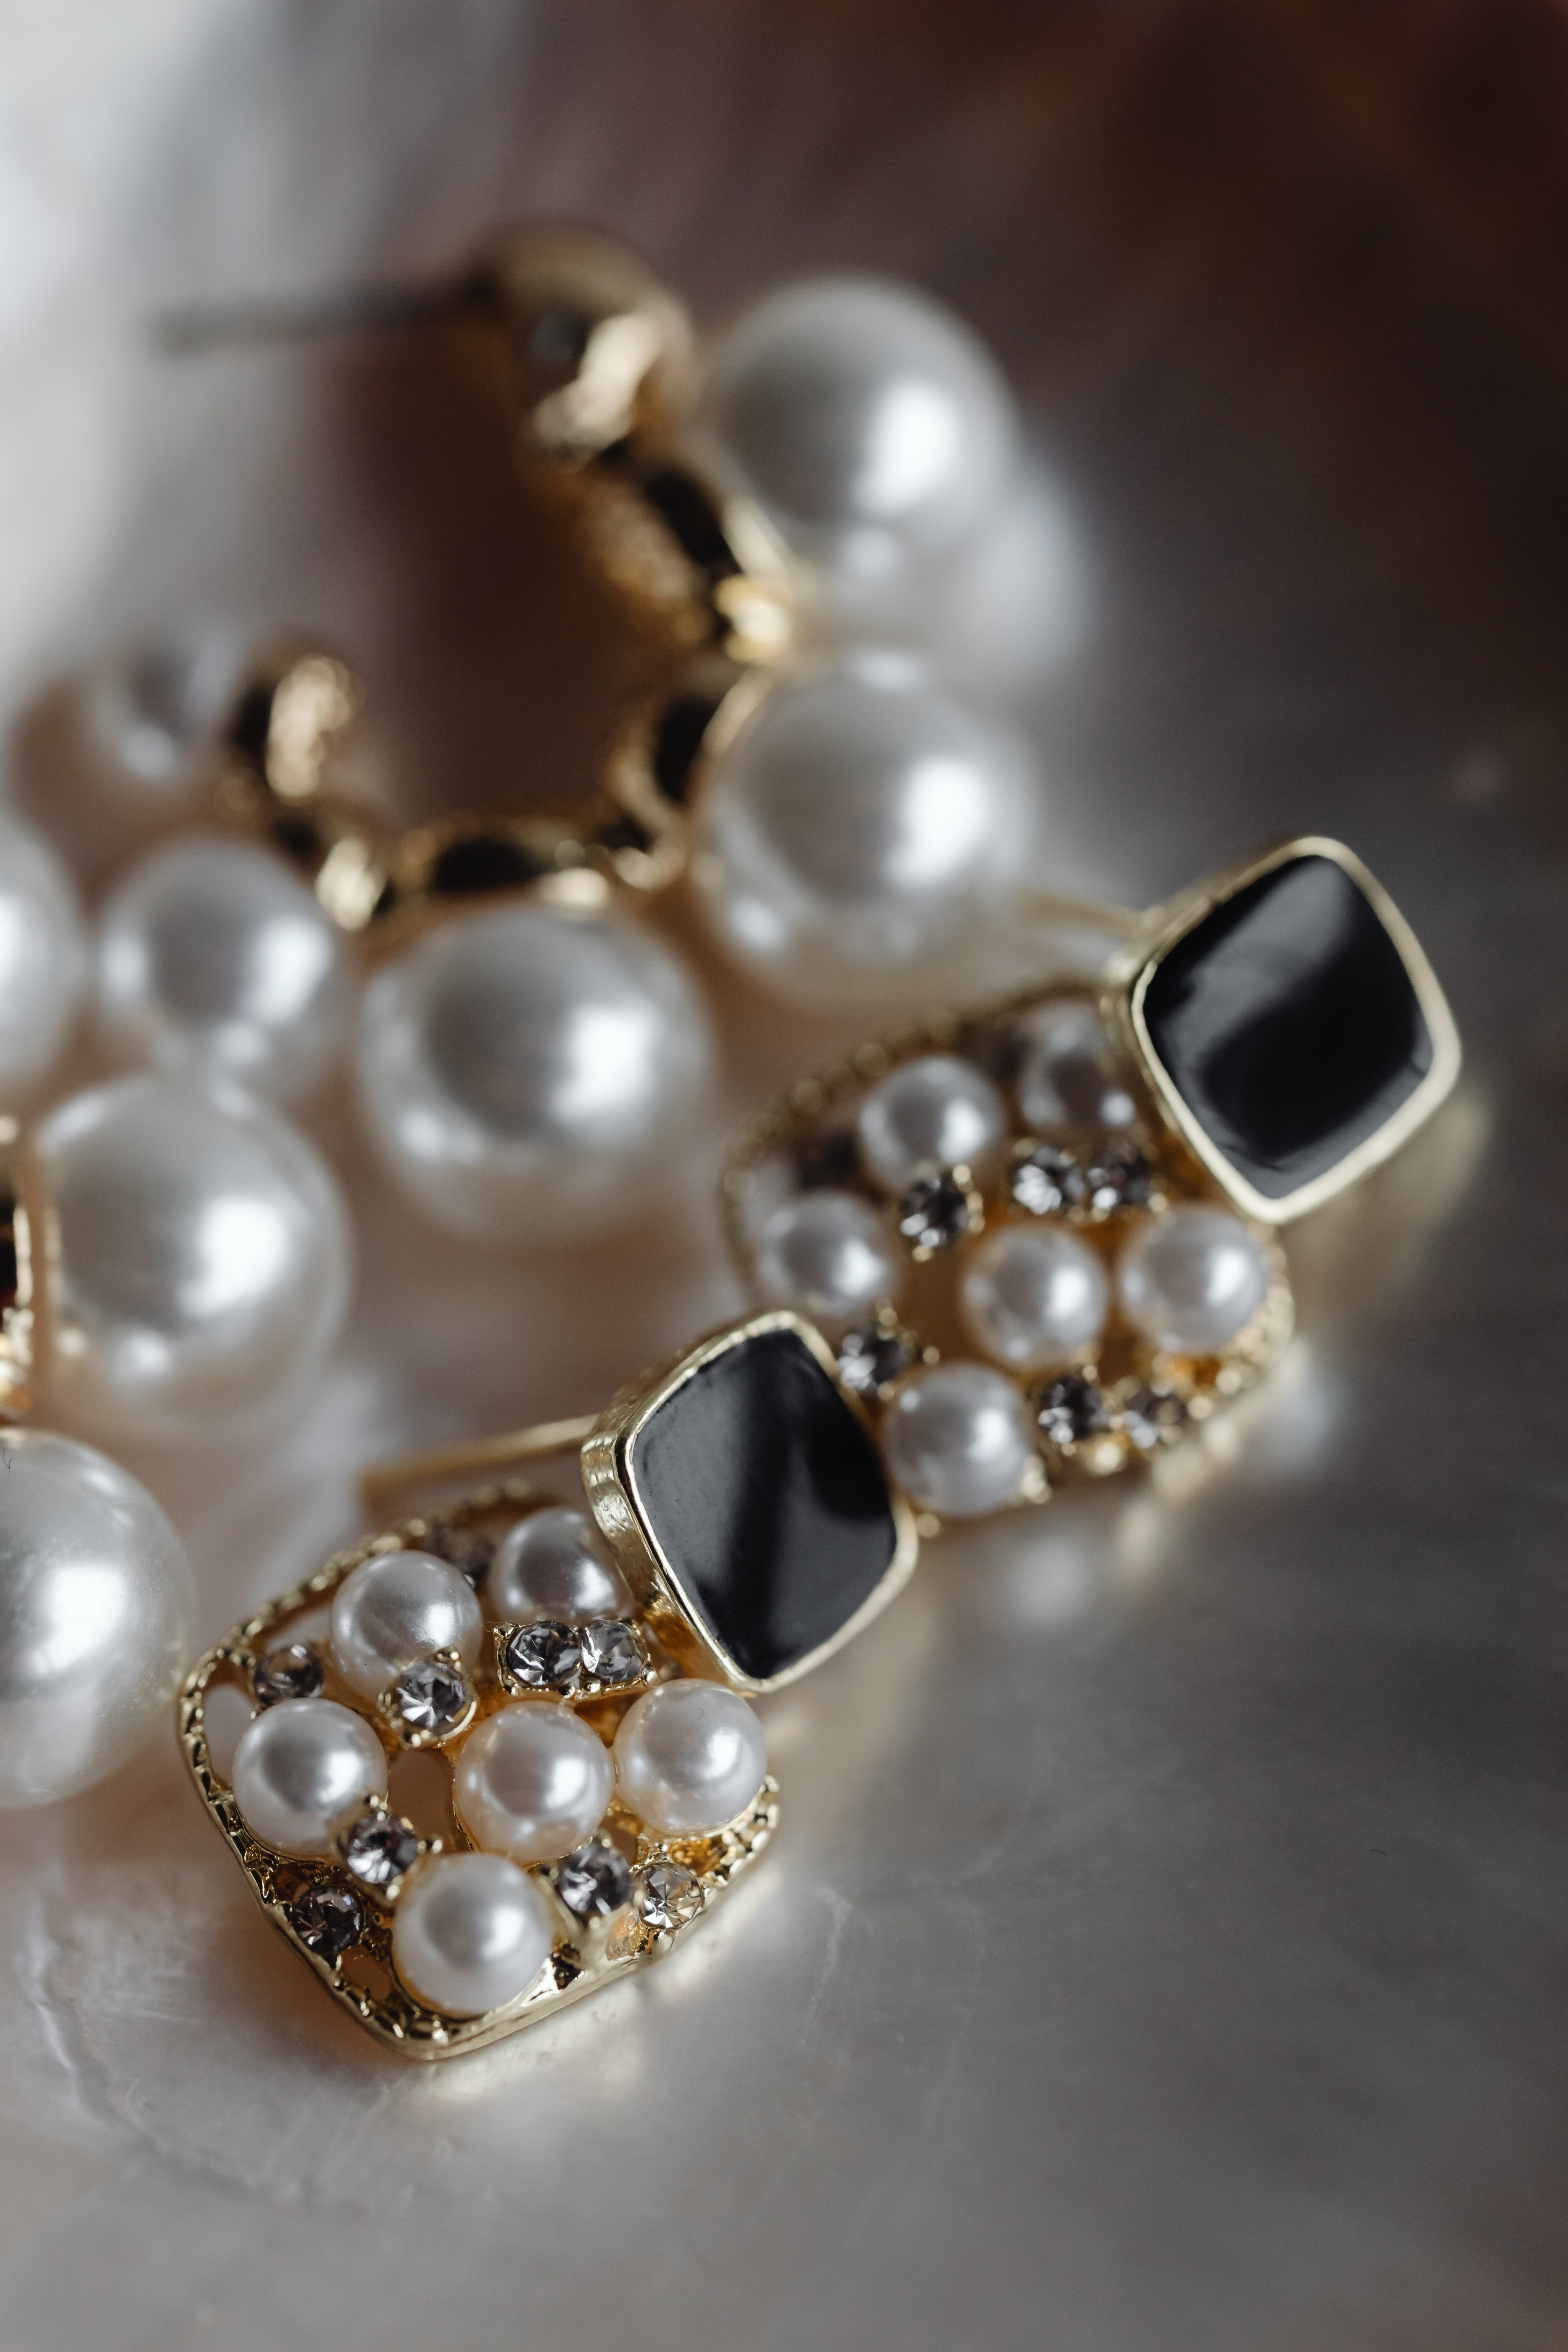 Pearl jewelry - earrings